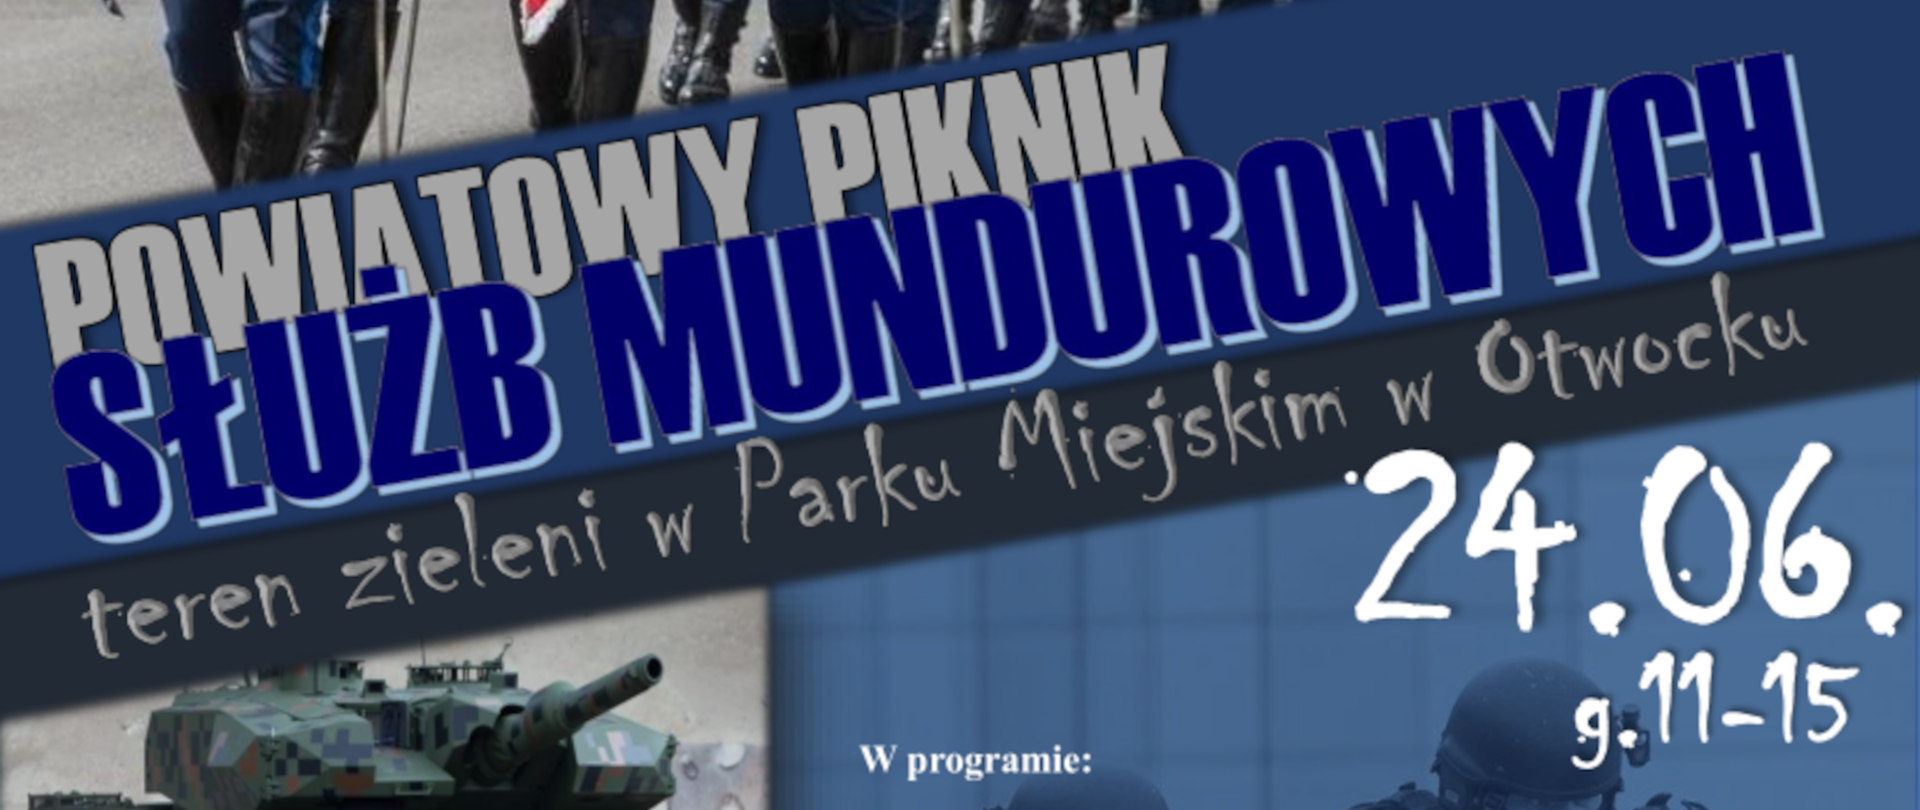 Zaproszenie na piknik służb mundurowych który odbędzie się w Parku Miejskim w Otwocku, 24 czerwca w godzinach 11 - 15.